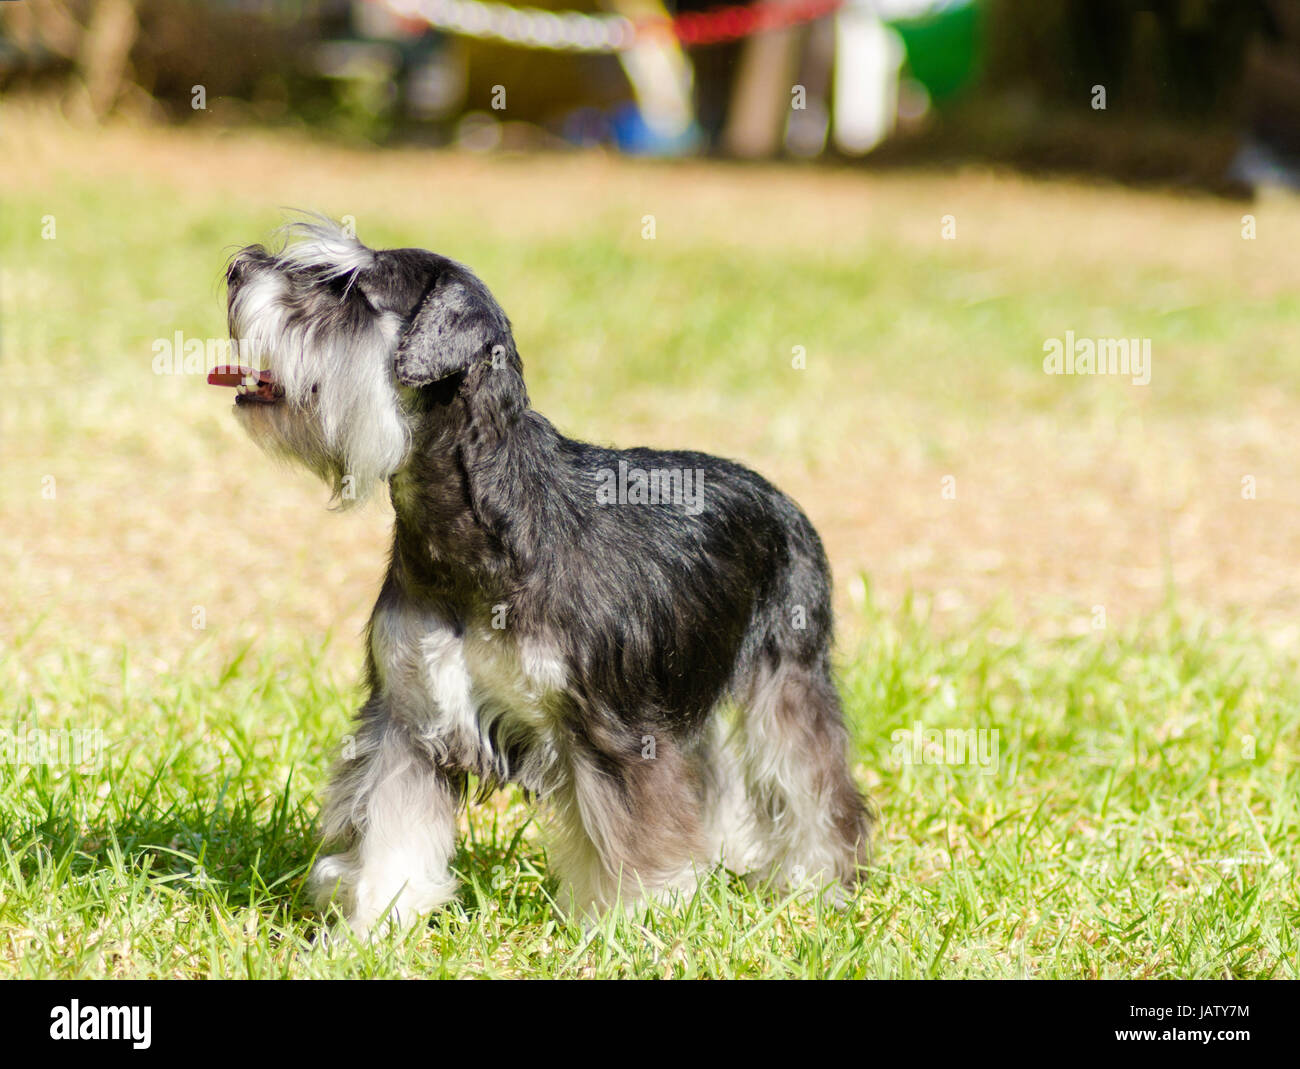 Ein kleiner schwarz-silbernen Zwergschnauzer Hund auf dem Rasen stehen, suchen sehr glücklich. Es ist dafür bekannt, eine intelligente, liebevolle und glücklichen Hund Stockfoto